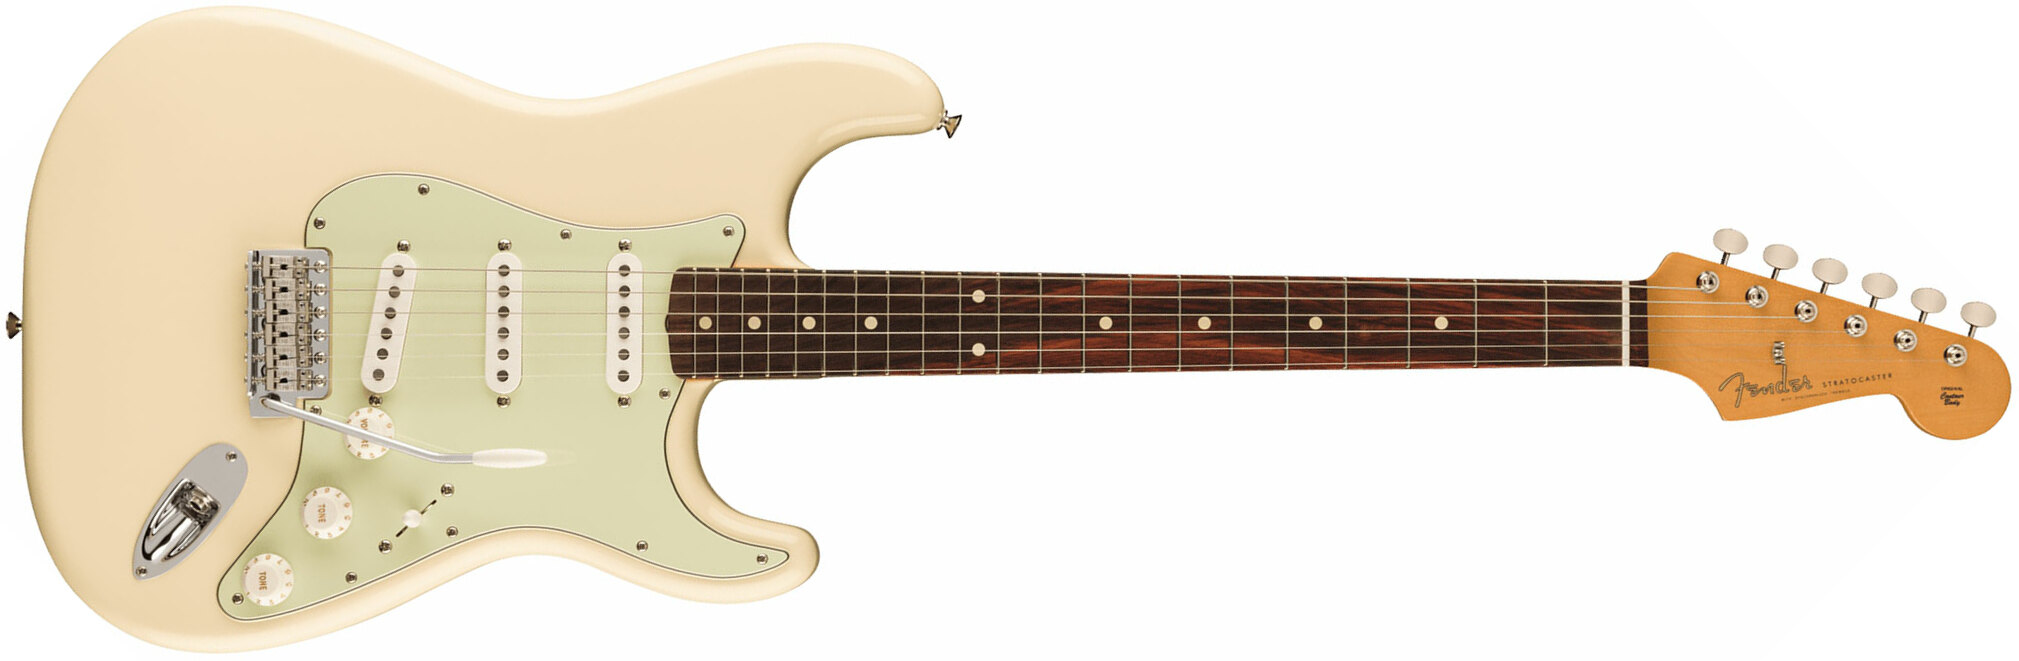 Fender Strat 60s Vintera 2 Mex 3s Trem Rw - Olympic White - Guitare Électrique Forme Str - Main picture